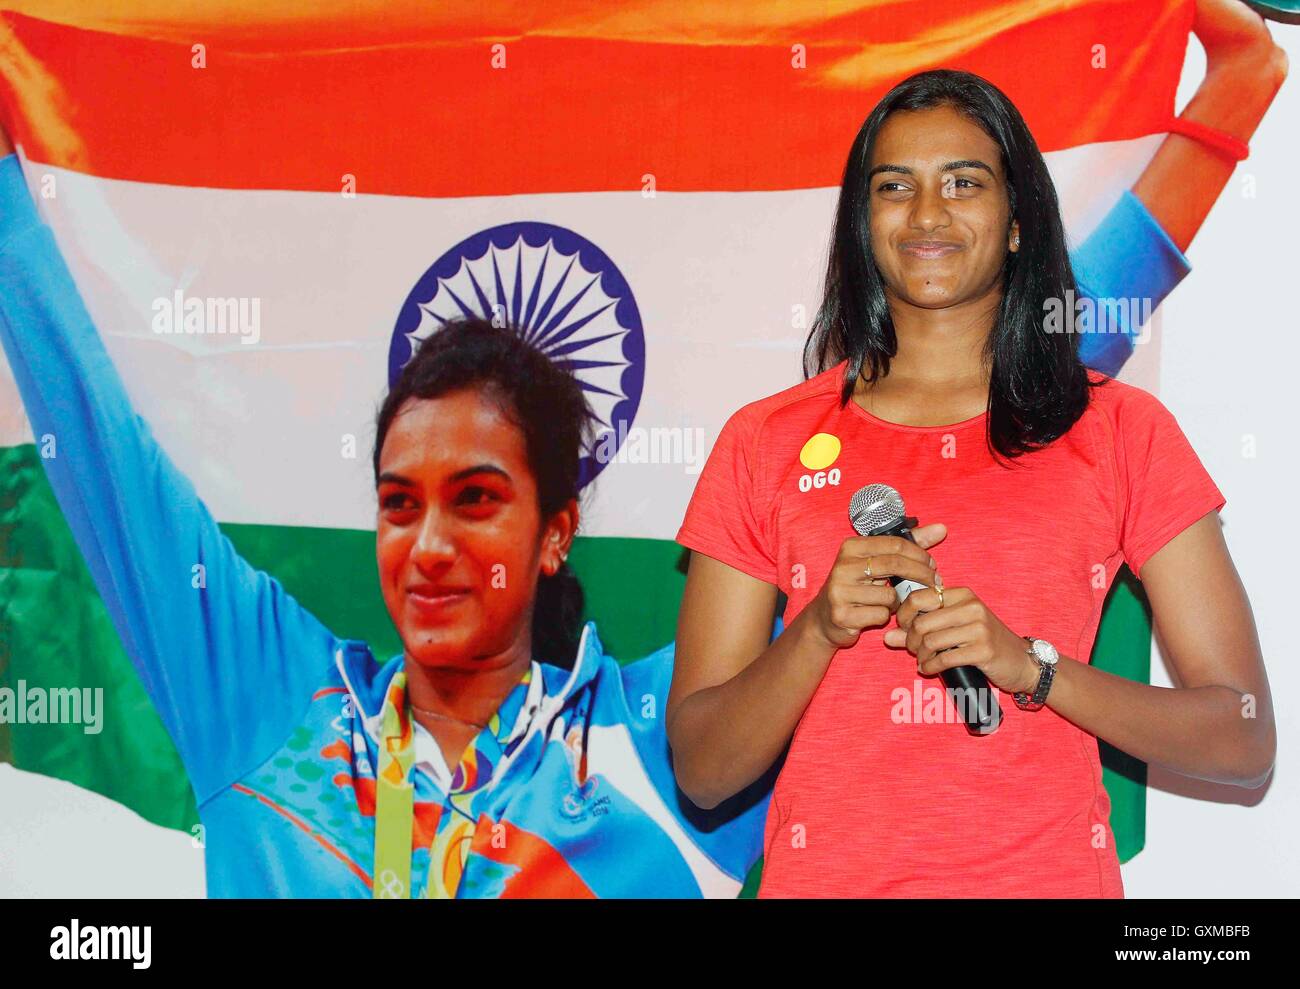 Indische Badmintonspielerin und Rio Olympia Silber Medallist P V Sindhu Glückwünsche Funktion organisiert OGQ Mumbai Stockfoto